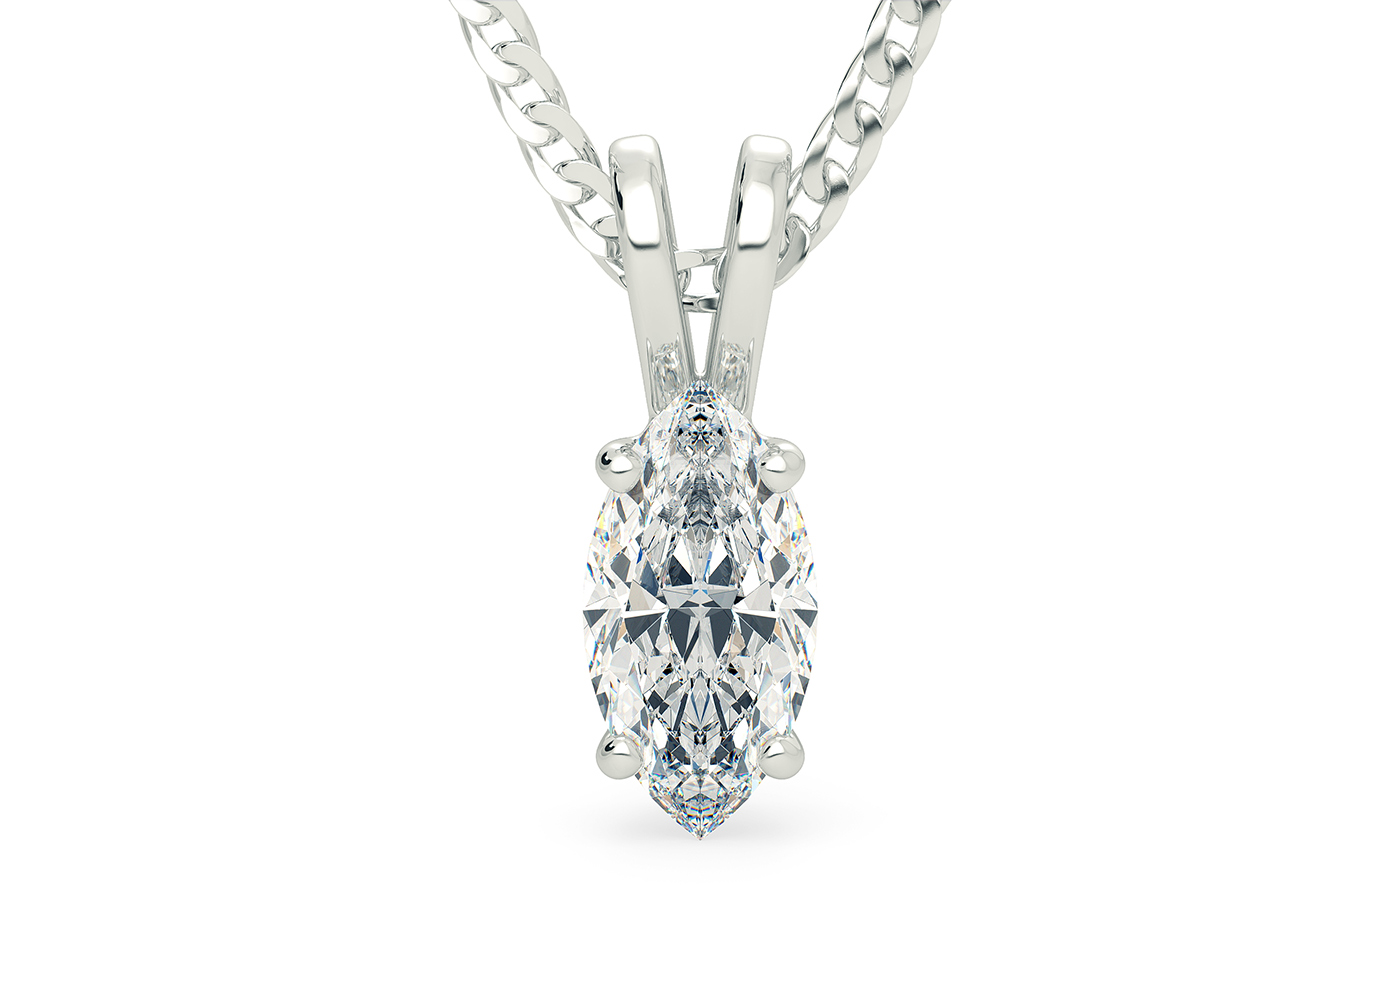 Two Carat Marquise Diamond Pendant in Platinum 950